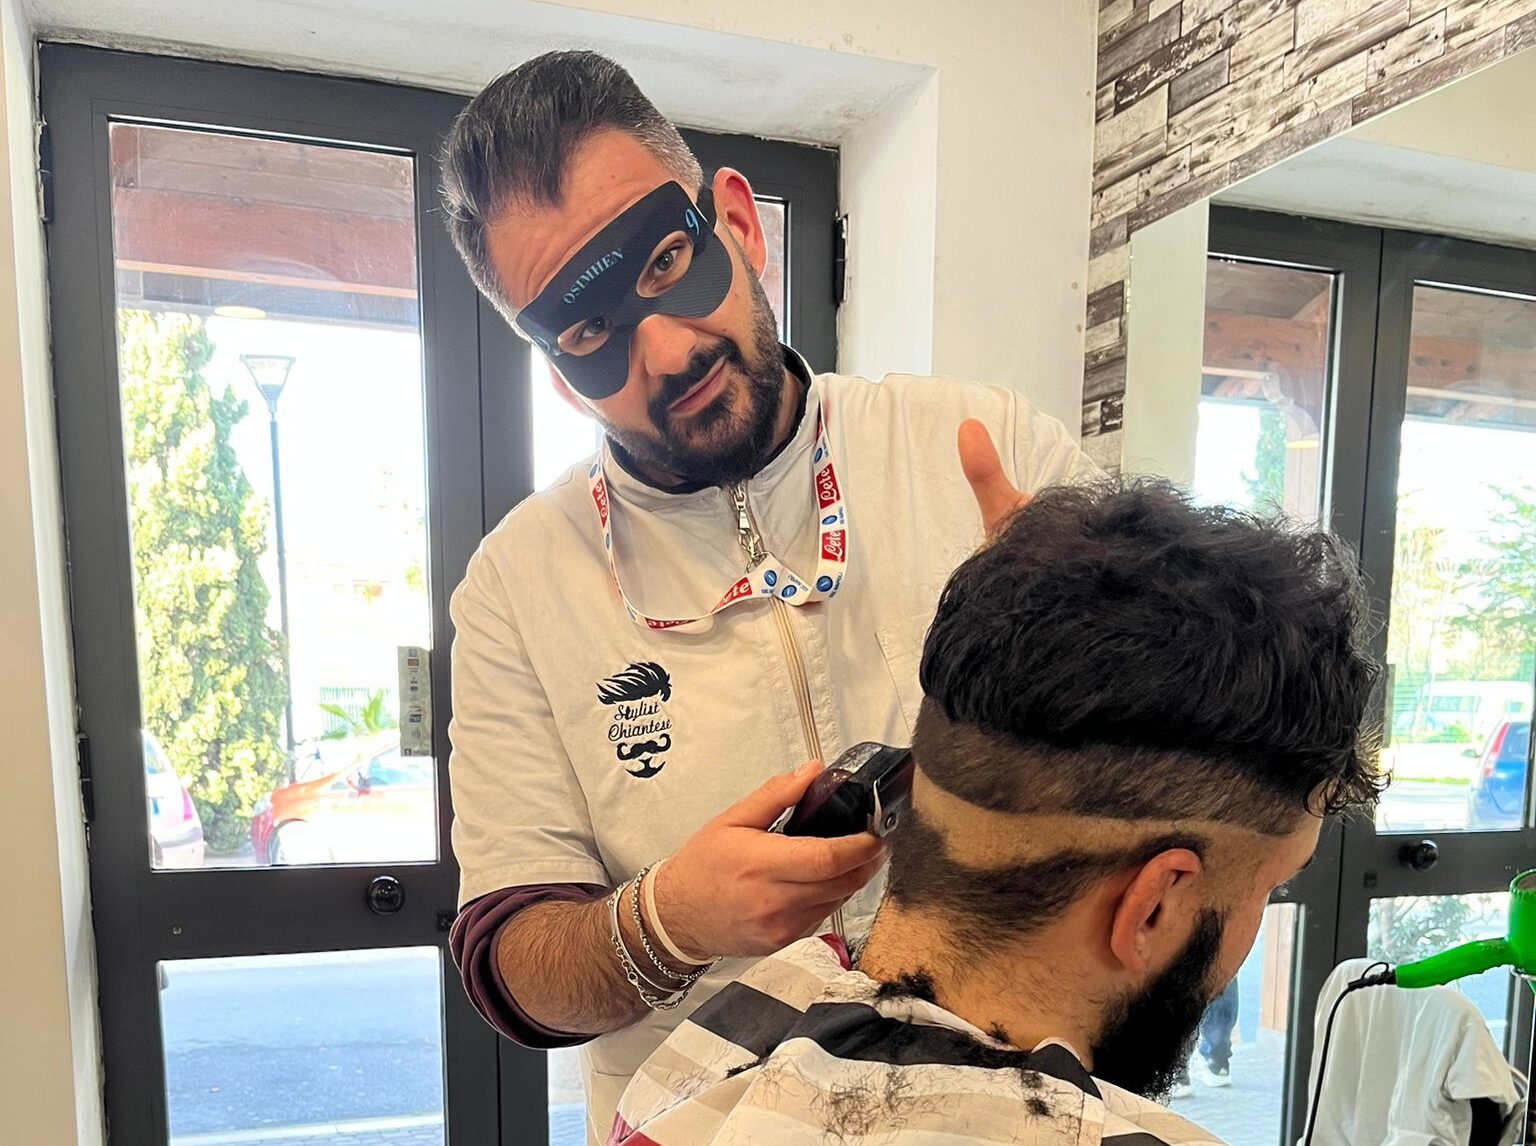 CURIOSITA’/ A Pozzuoli c’è Alessandro, il barbiere che taglia i capelli con la maschera di Osimhen